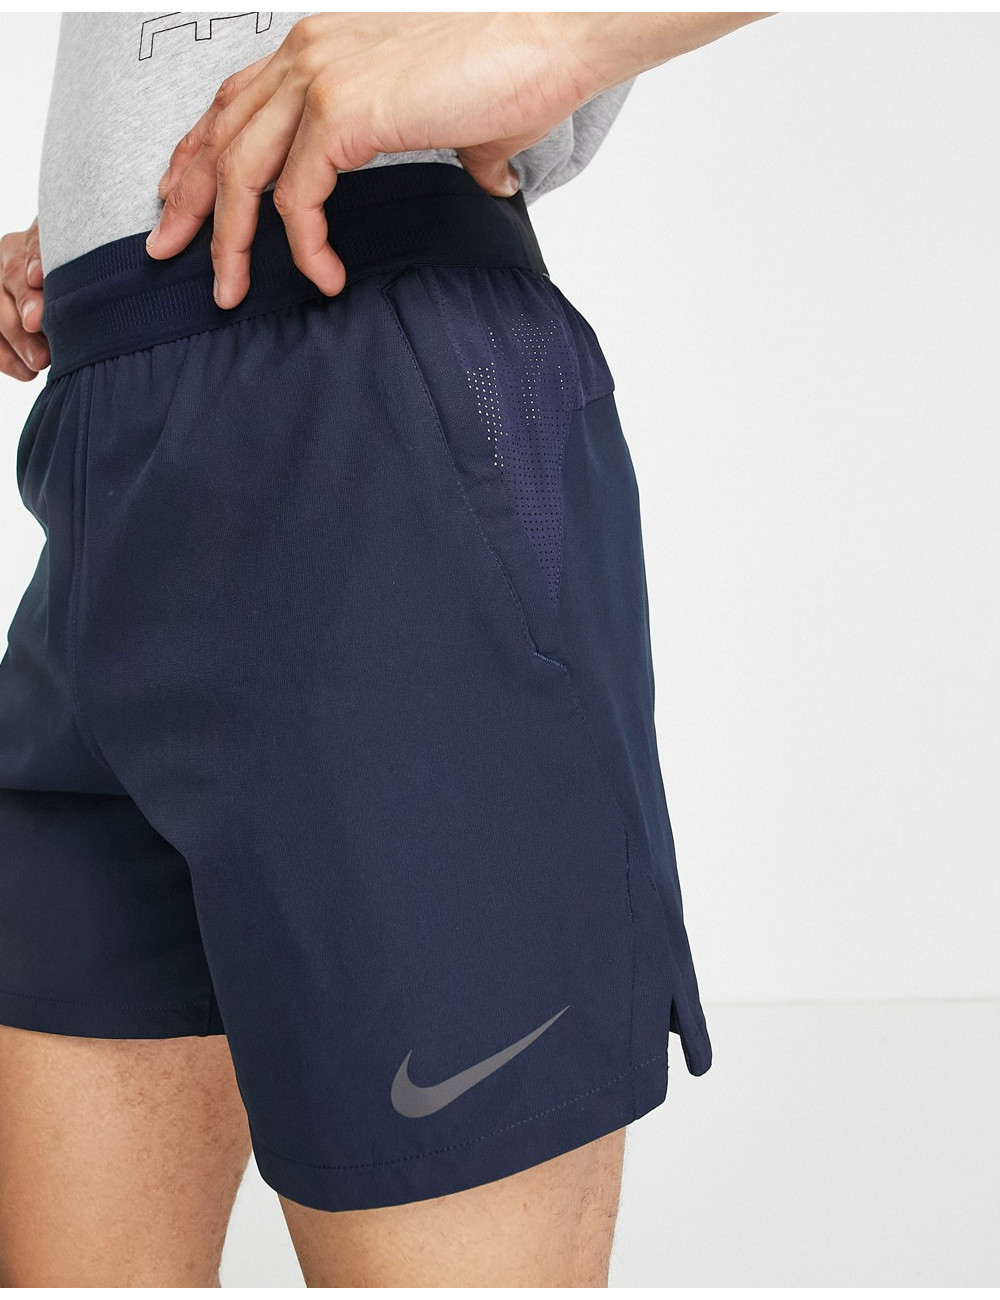 Nike Pro Training shorts in...